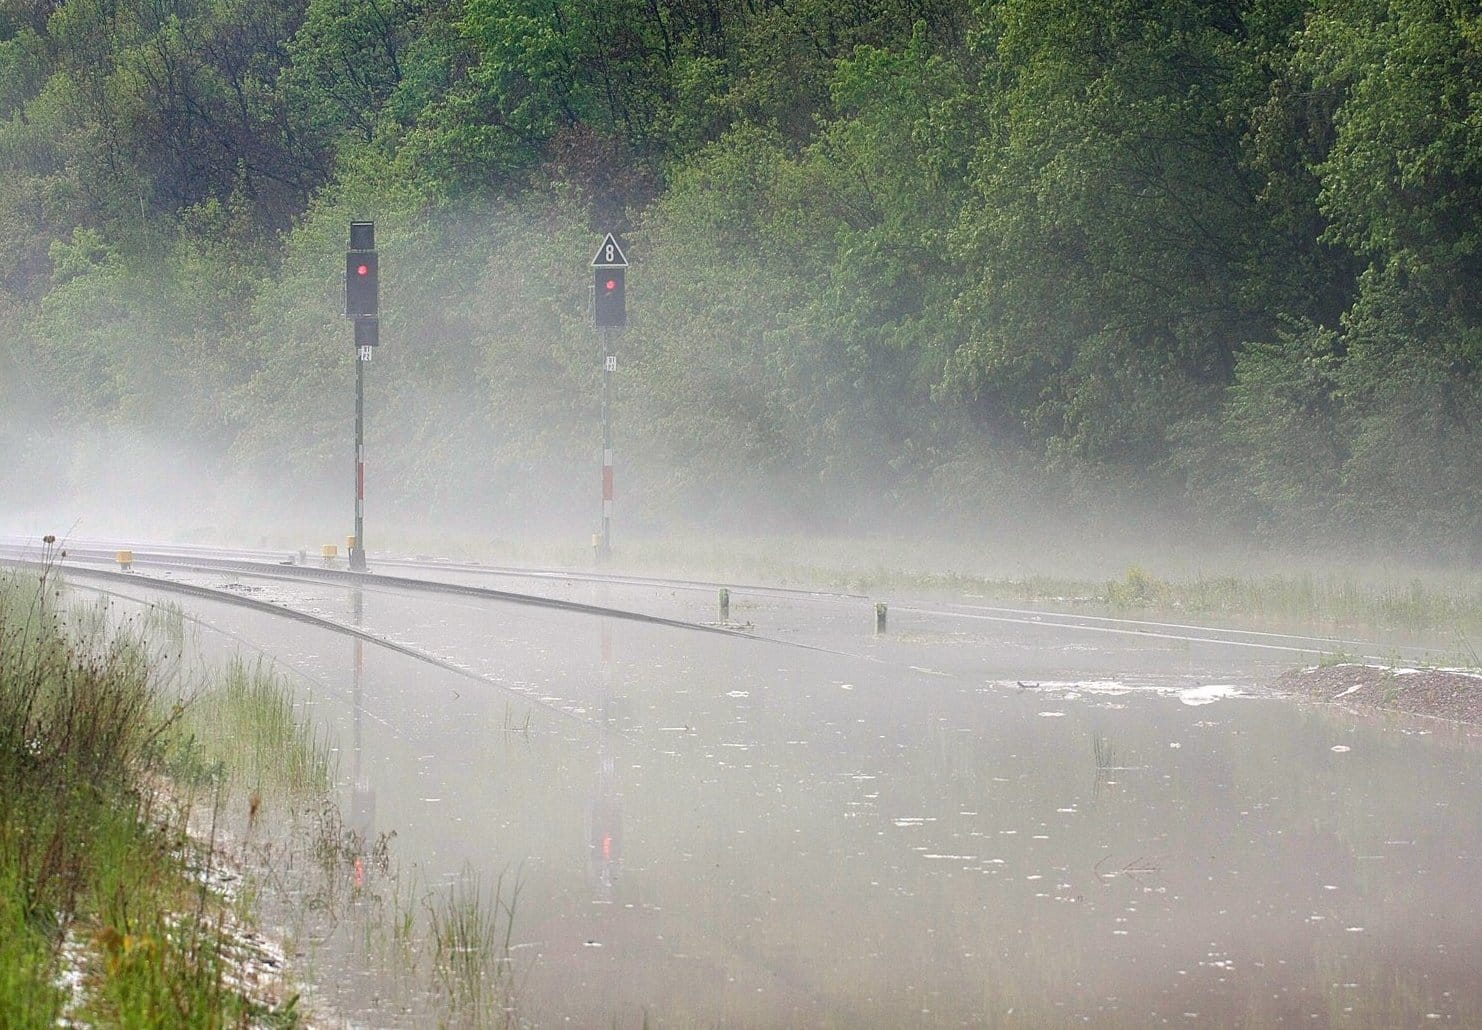 Ebenfalls in Plaue: Die Gleise der Süd-Thüringen-Bahn (STB) stehen unter Wasser. Nach Angaben des Deutschen Wetterdienstes fielen im Süden des Landes rund um den Thüringer Wald örtlich bis zu 40 Liter Regen pro Quadratmeter in einer Stunde.